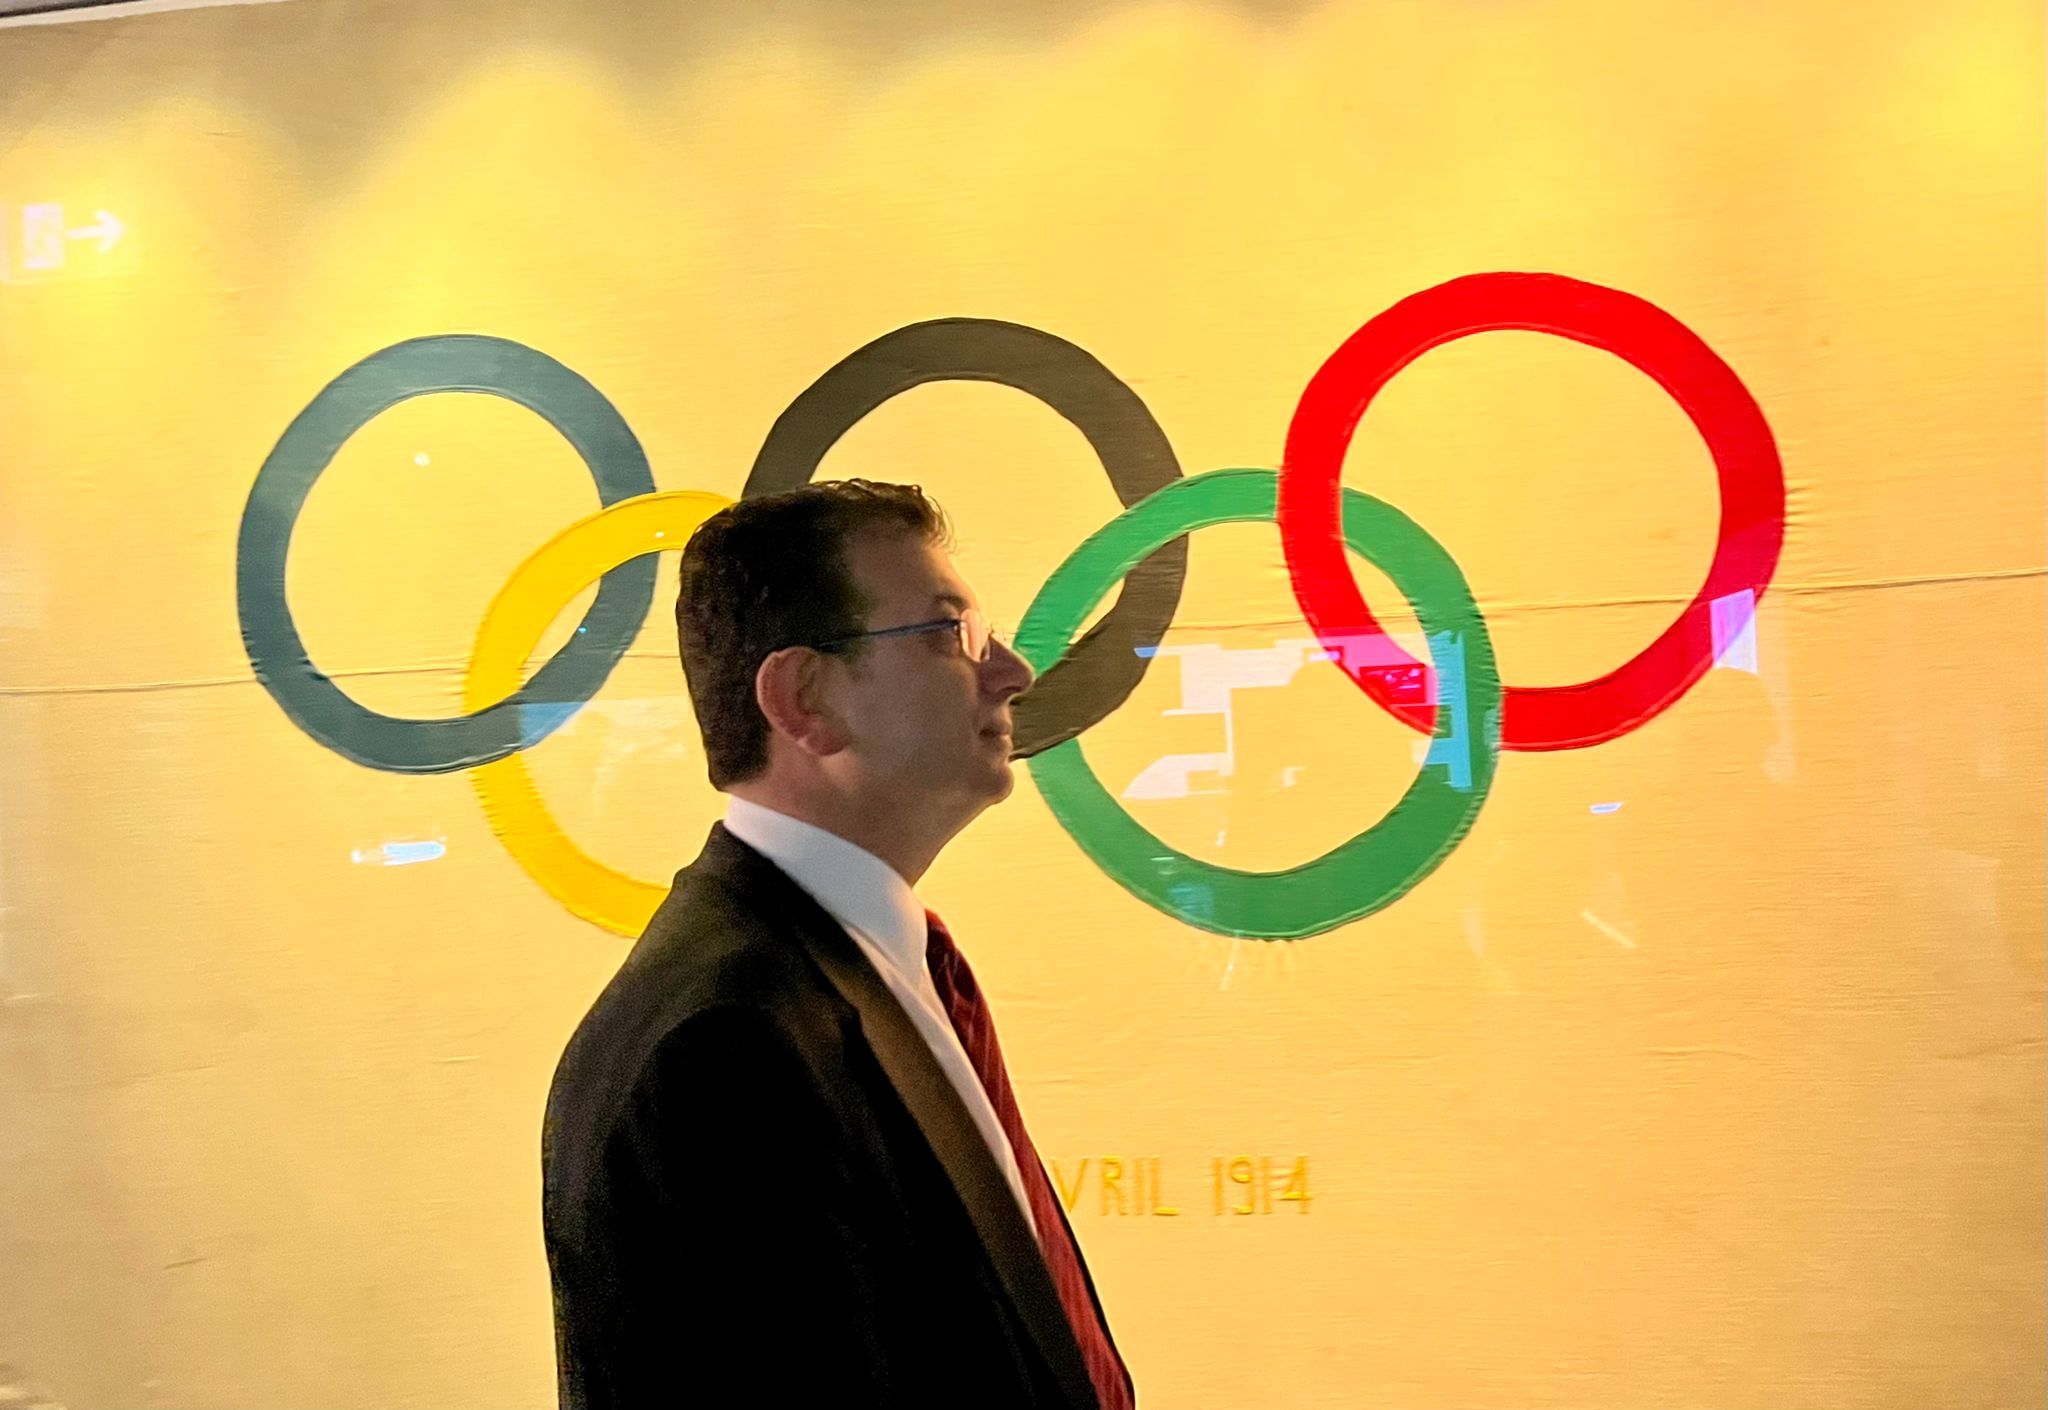 İmamoğlu'ndan 'Olimpiyat' Mesajı: İstanbul Her Koşulda Kazanacak